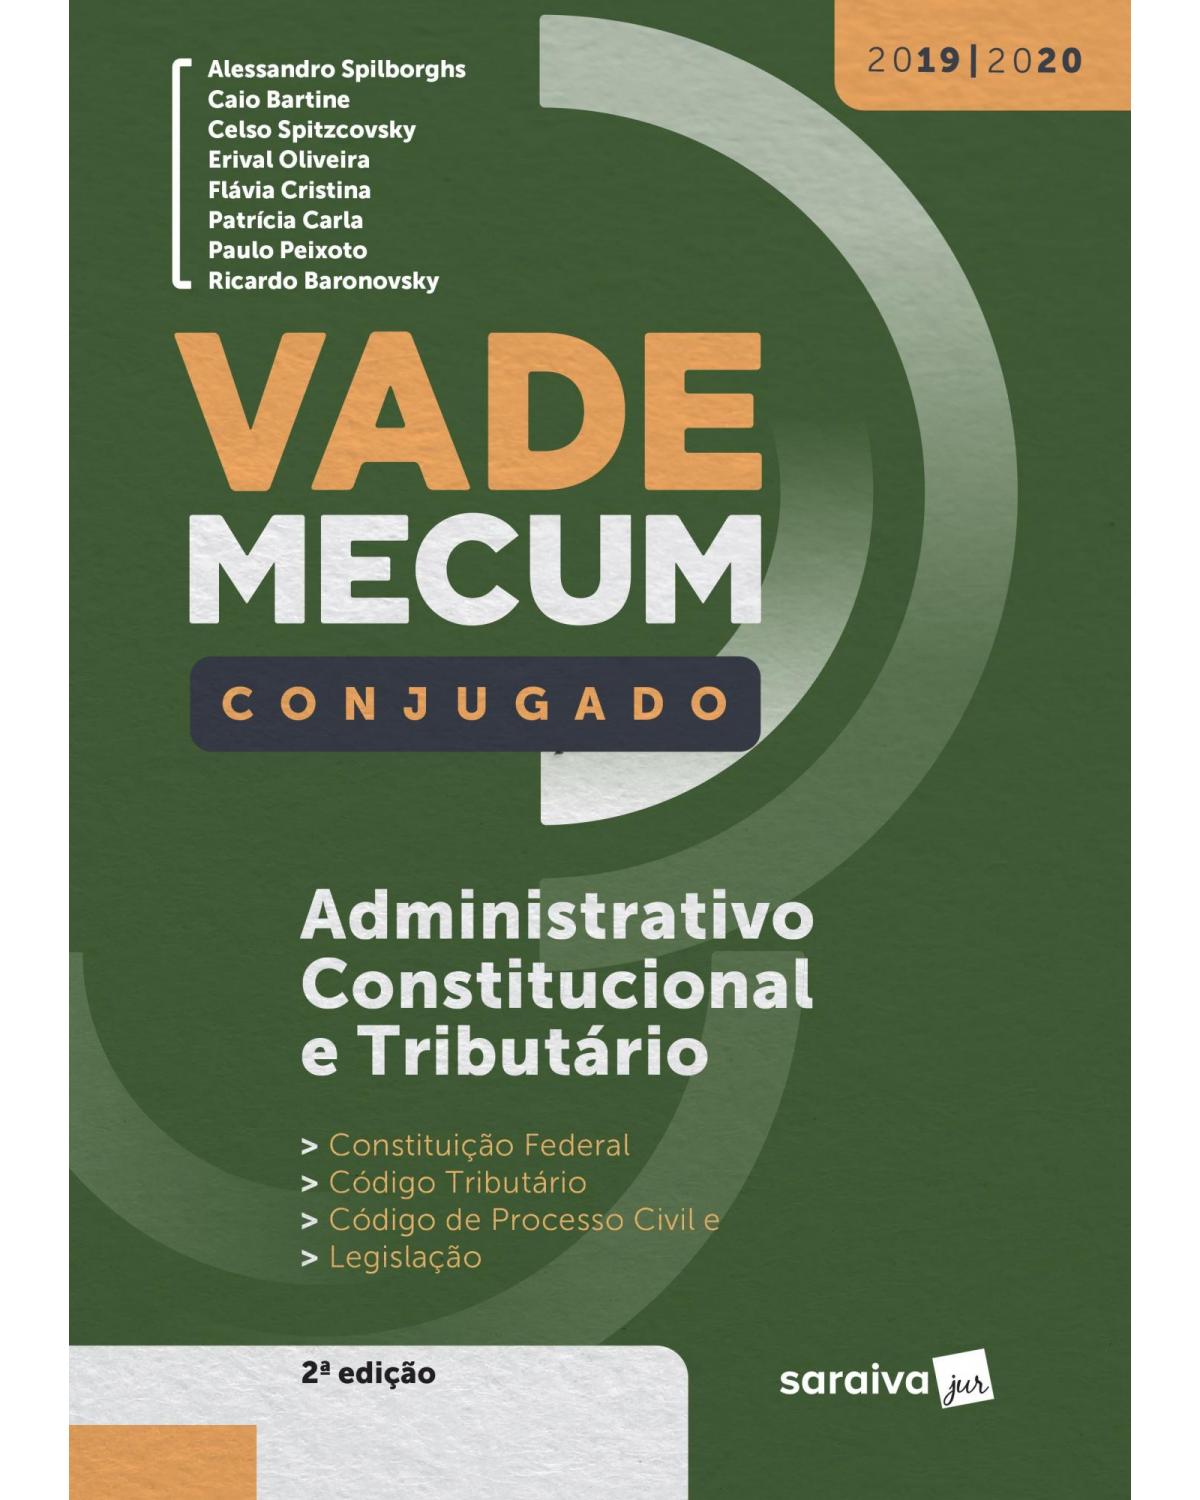 Vade mecum conjugado - Administrativo, constitucional e tributário - 2ª Edição | 2019